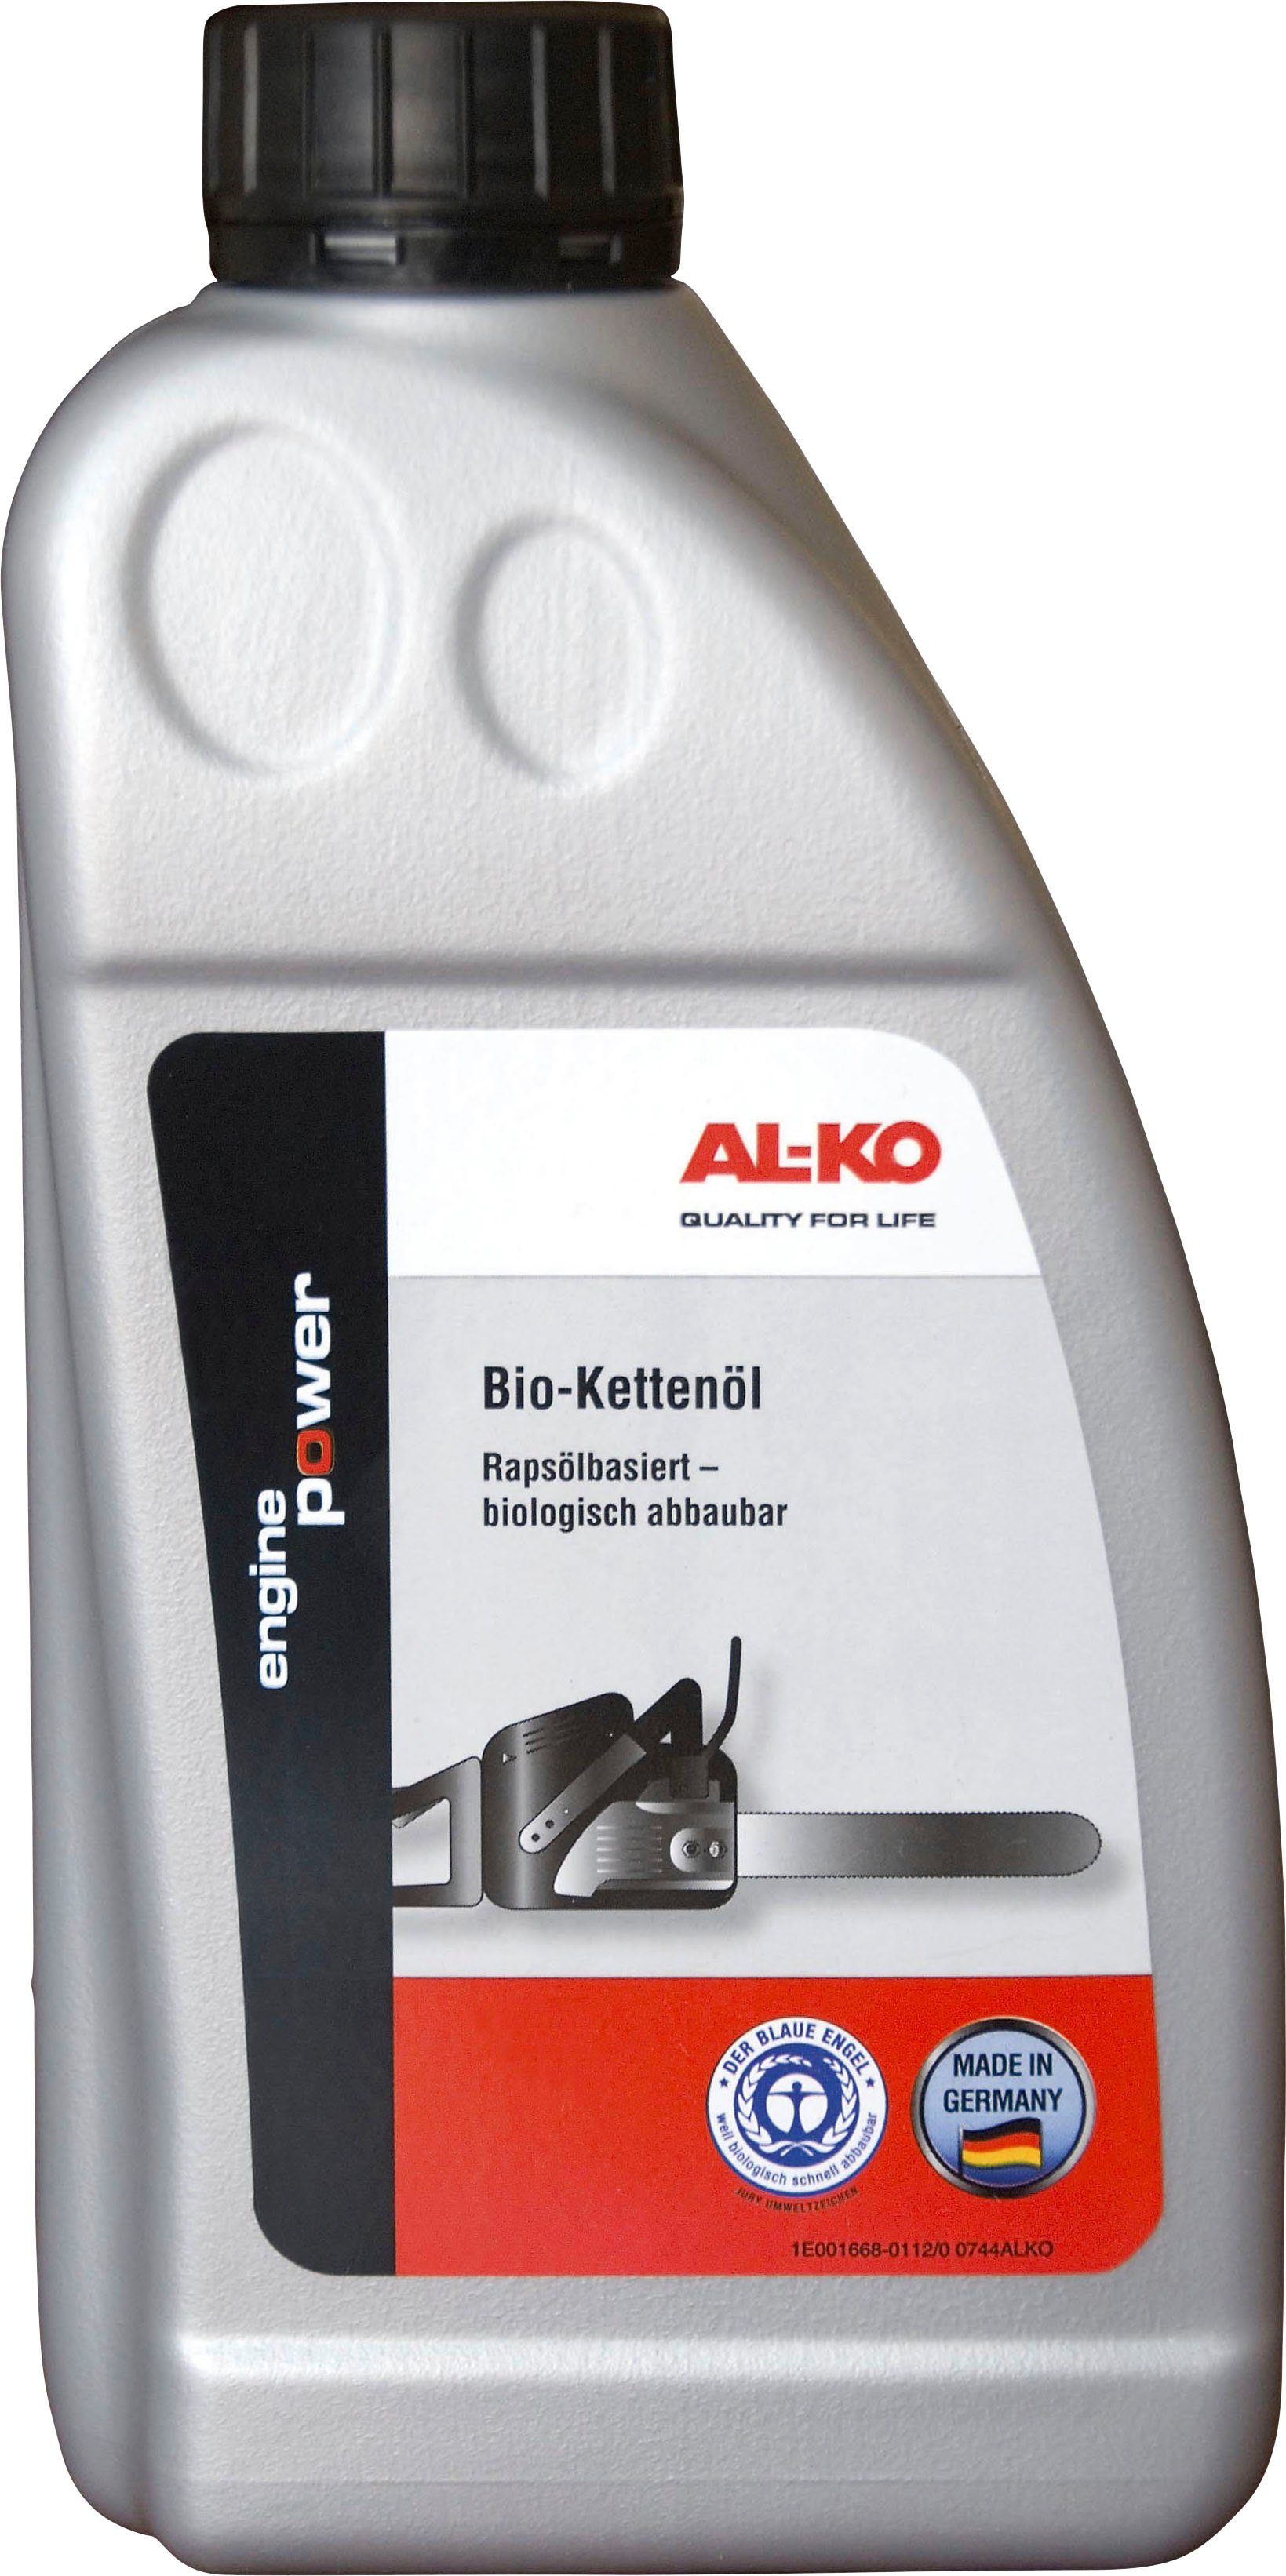 AL-KO Kettenöl Bio, 1000 ml, Kettenöl für Kettensägen, 1 l